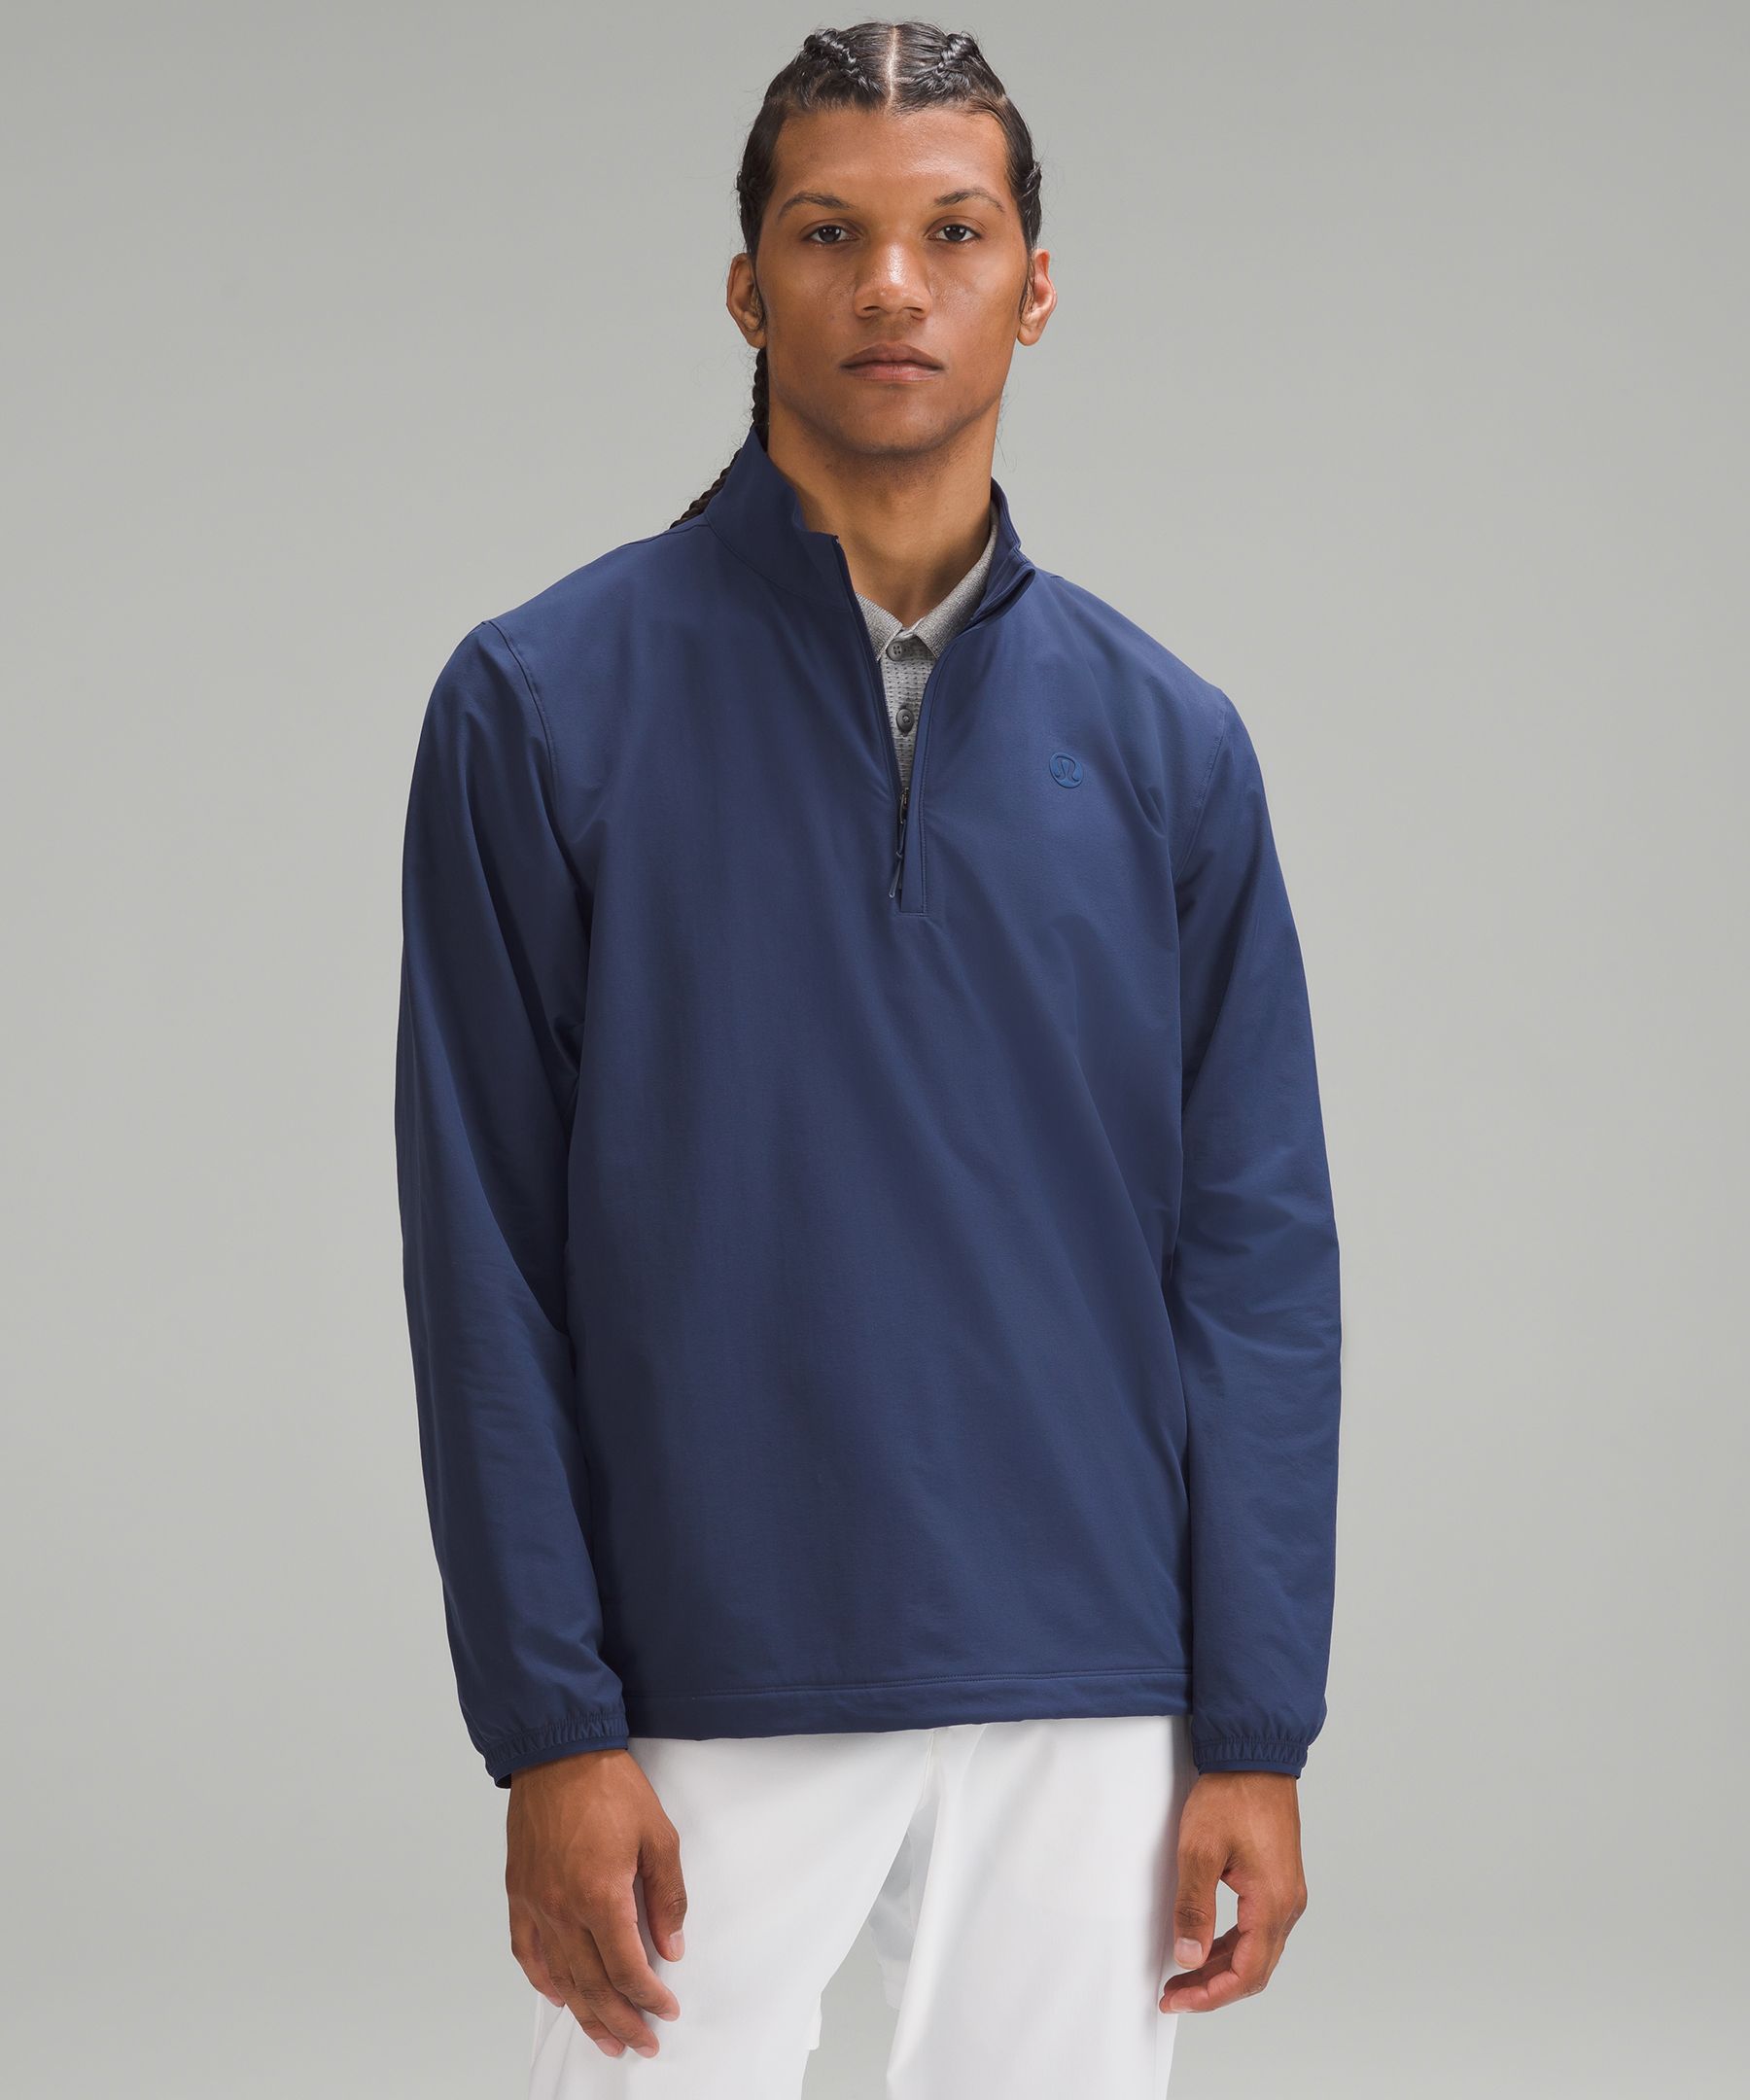 Golf Half-Zip Windbreaker, Men's Hoodies & Sweatshirts